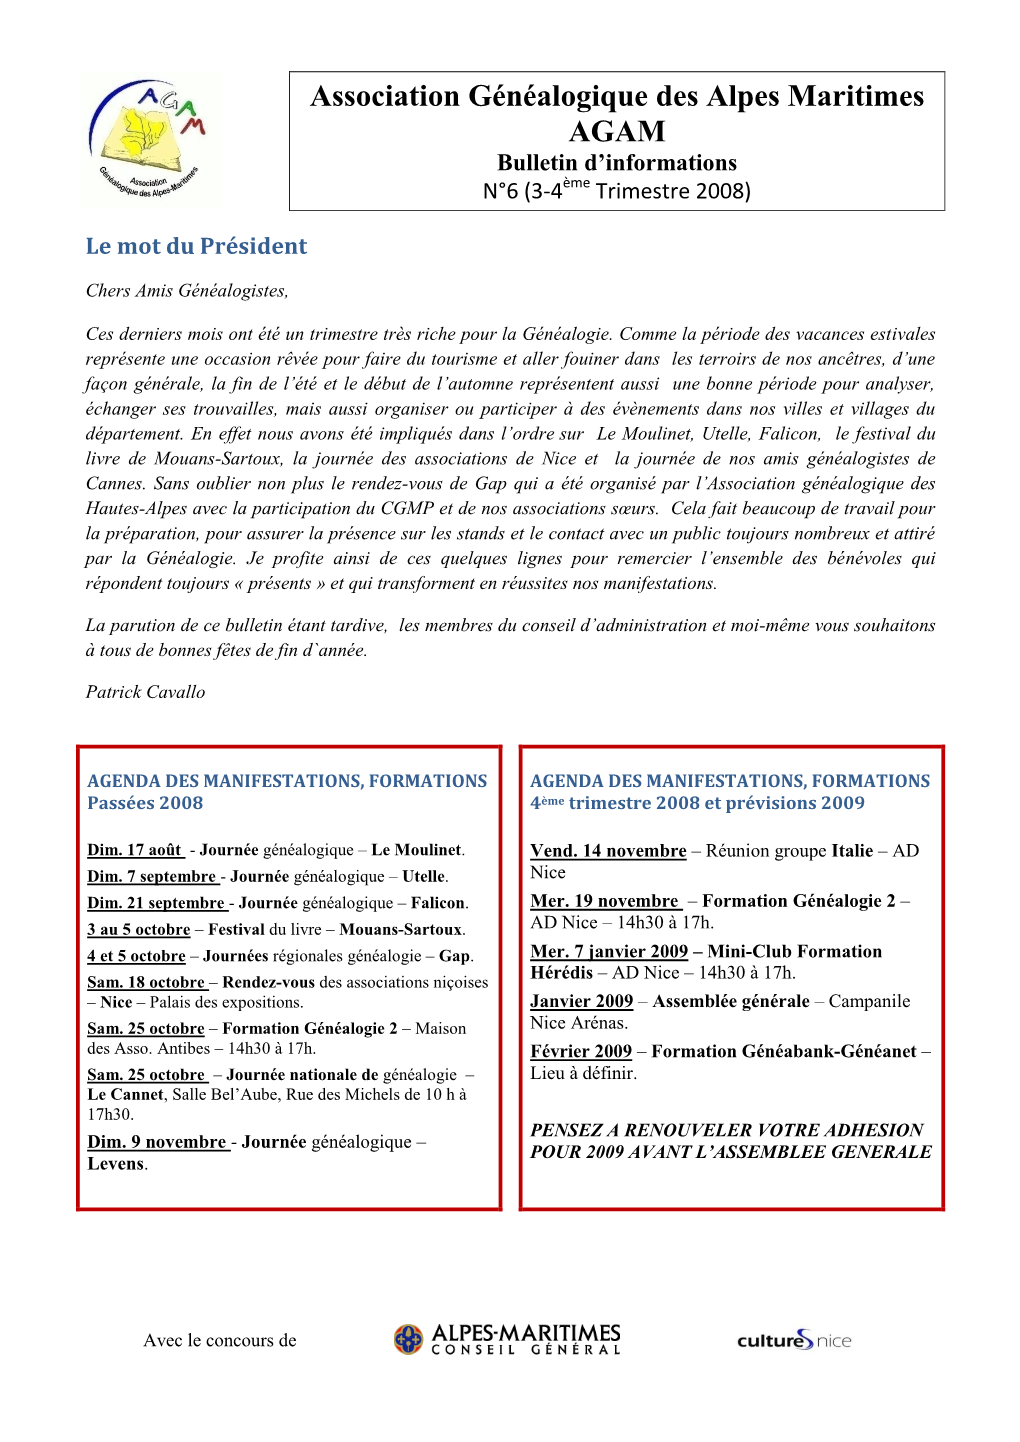 Association Généalogique Des Alpes Maritimes AGAM Bulletin D’Informations Ème N°6 (3-4 Trimestre 2008)